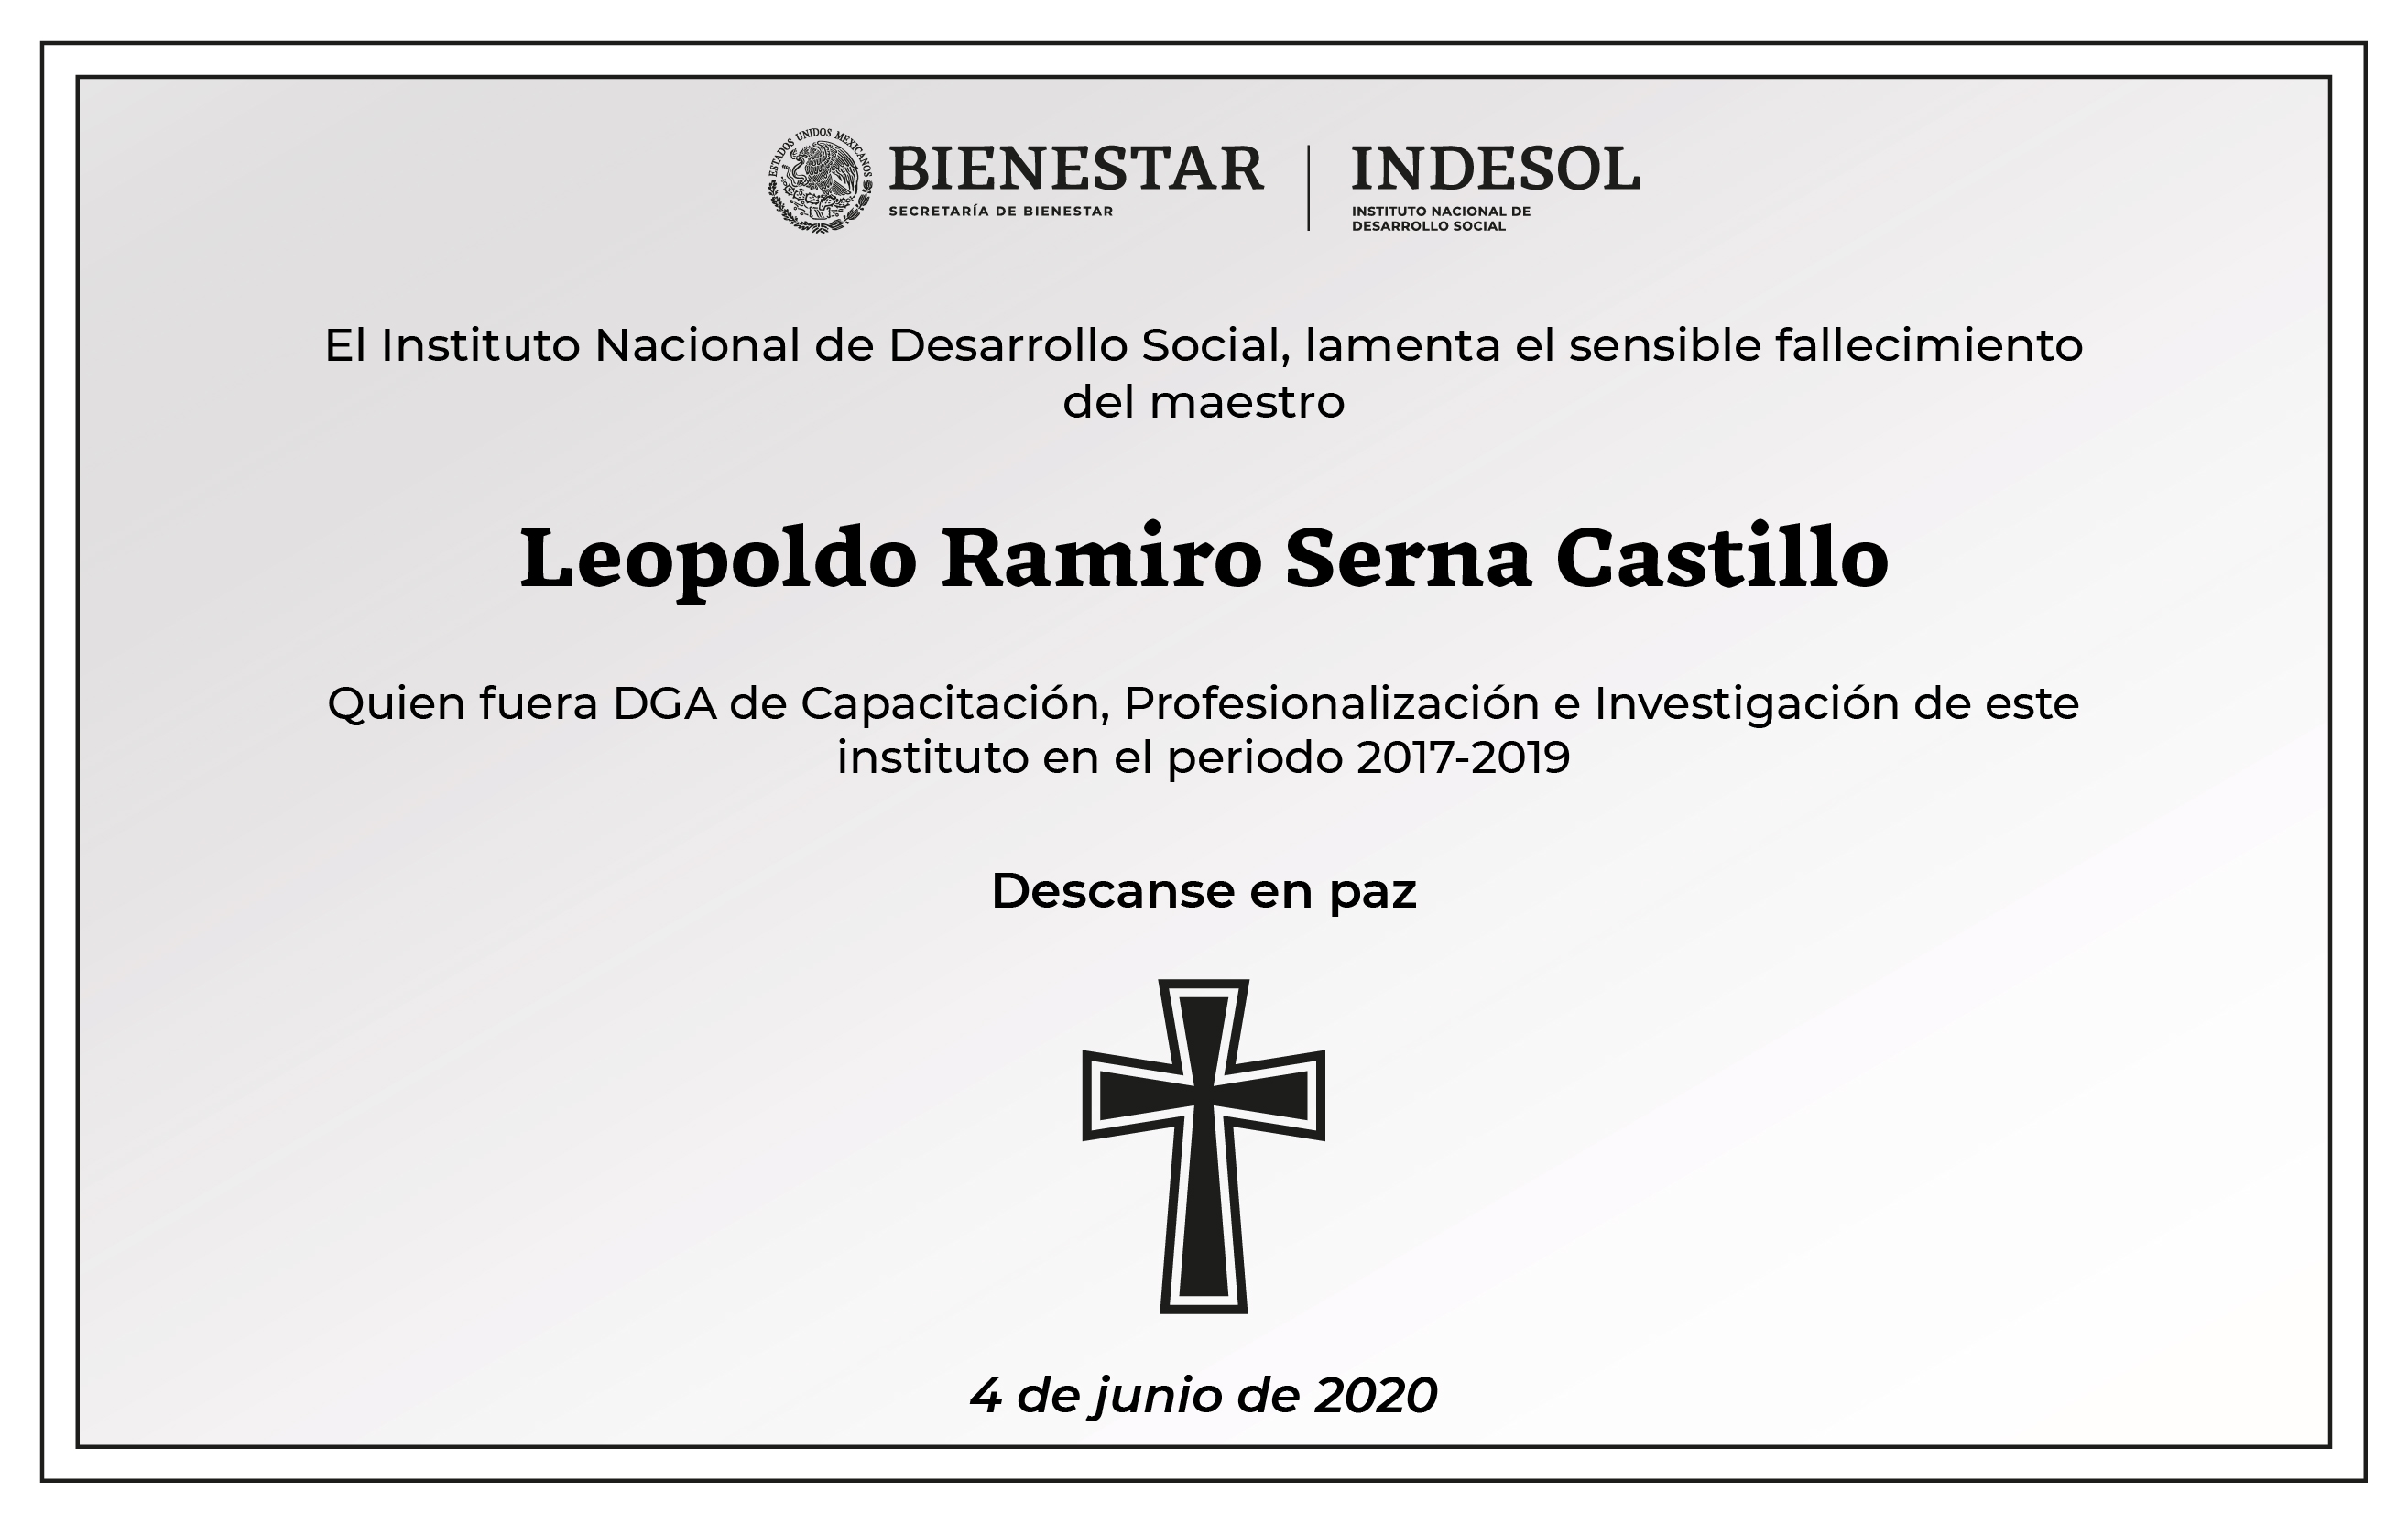 El Instituto Nacional de Desarrollo Social, lamenta el sensible fallecimiento del maestro Leopoldo Ramiro Serna Castillo, quien fuera DGA de Capacitación, Profesionalización e Investigación de este instituto en el periodo 2017-2019. Descanse en paz